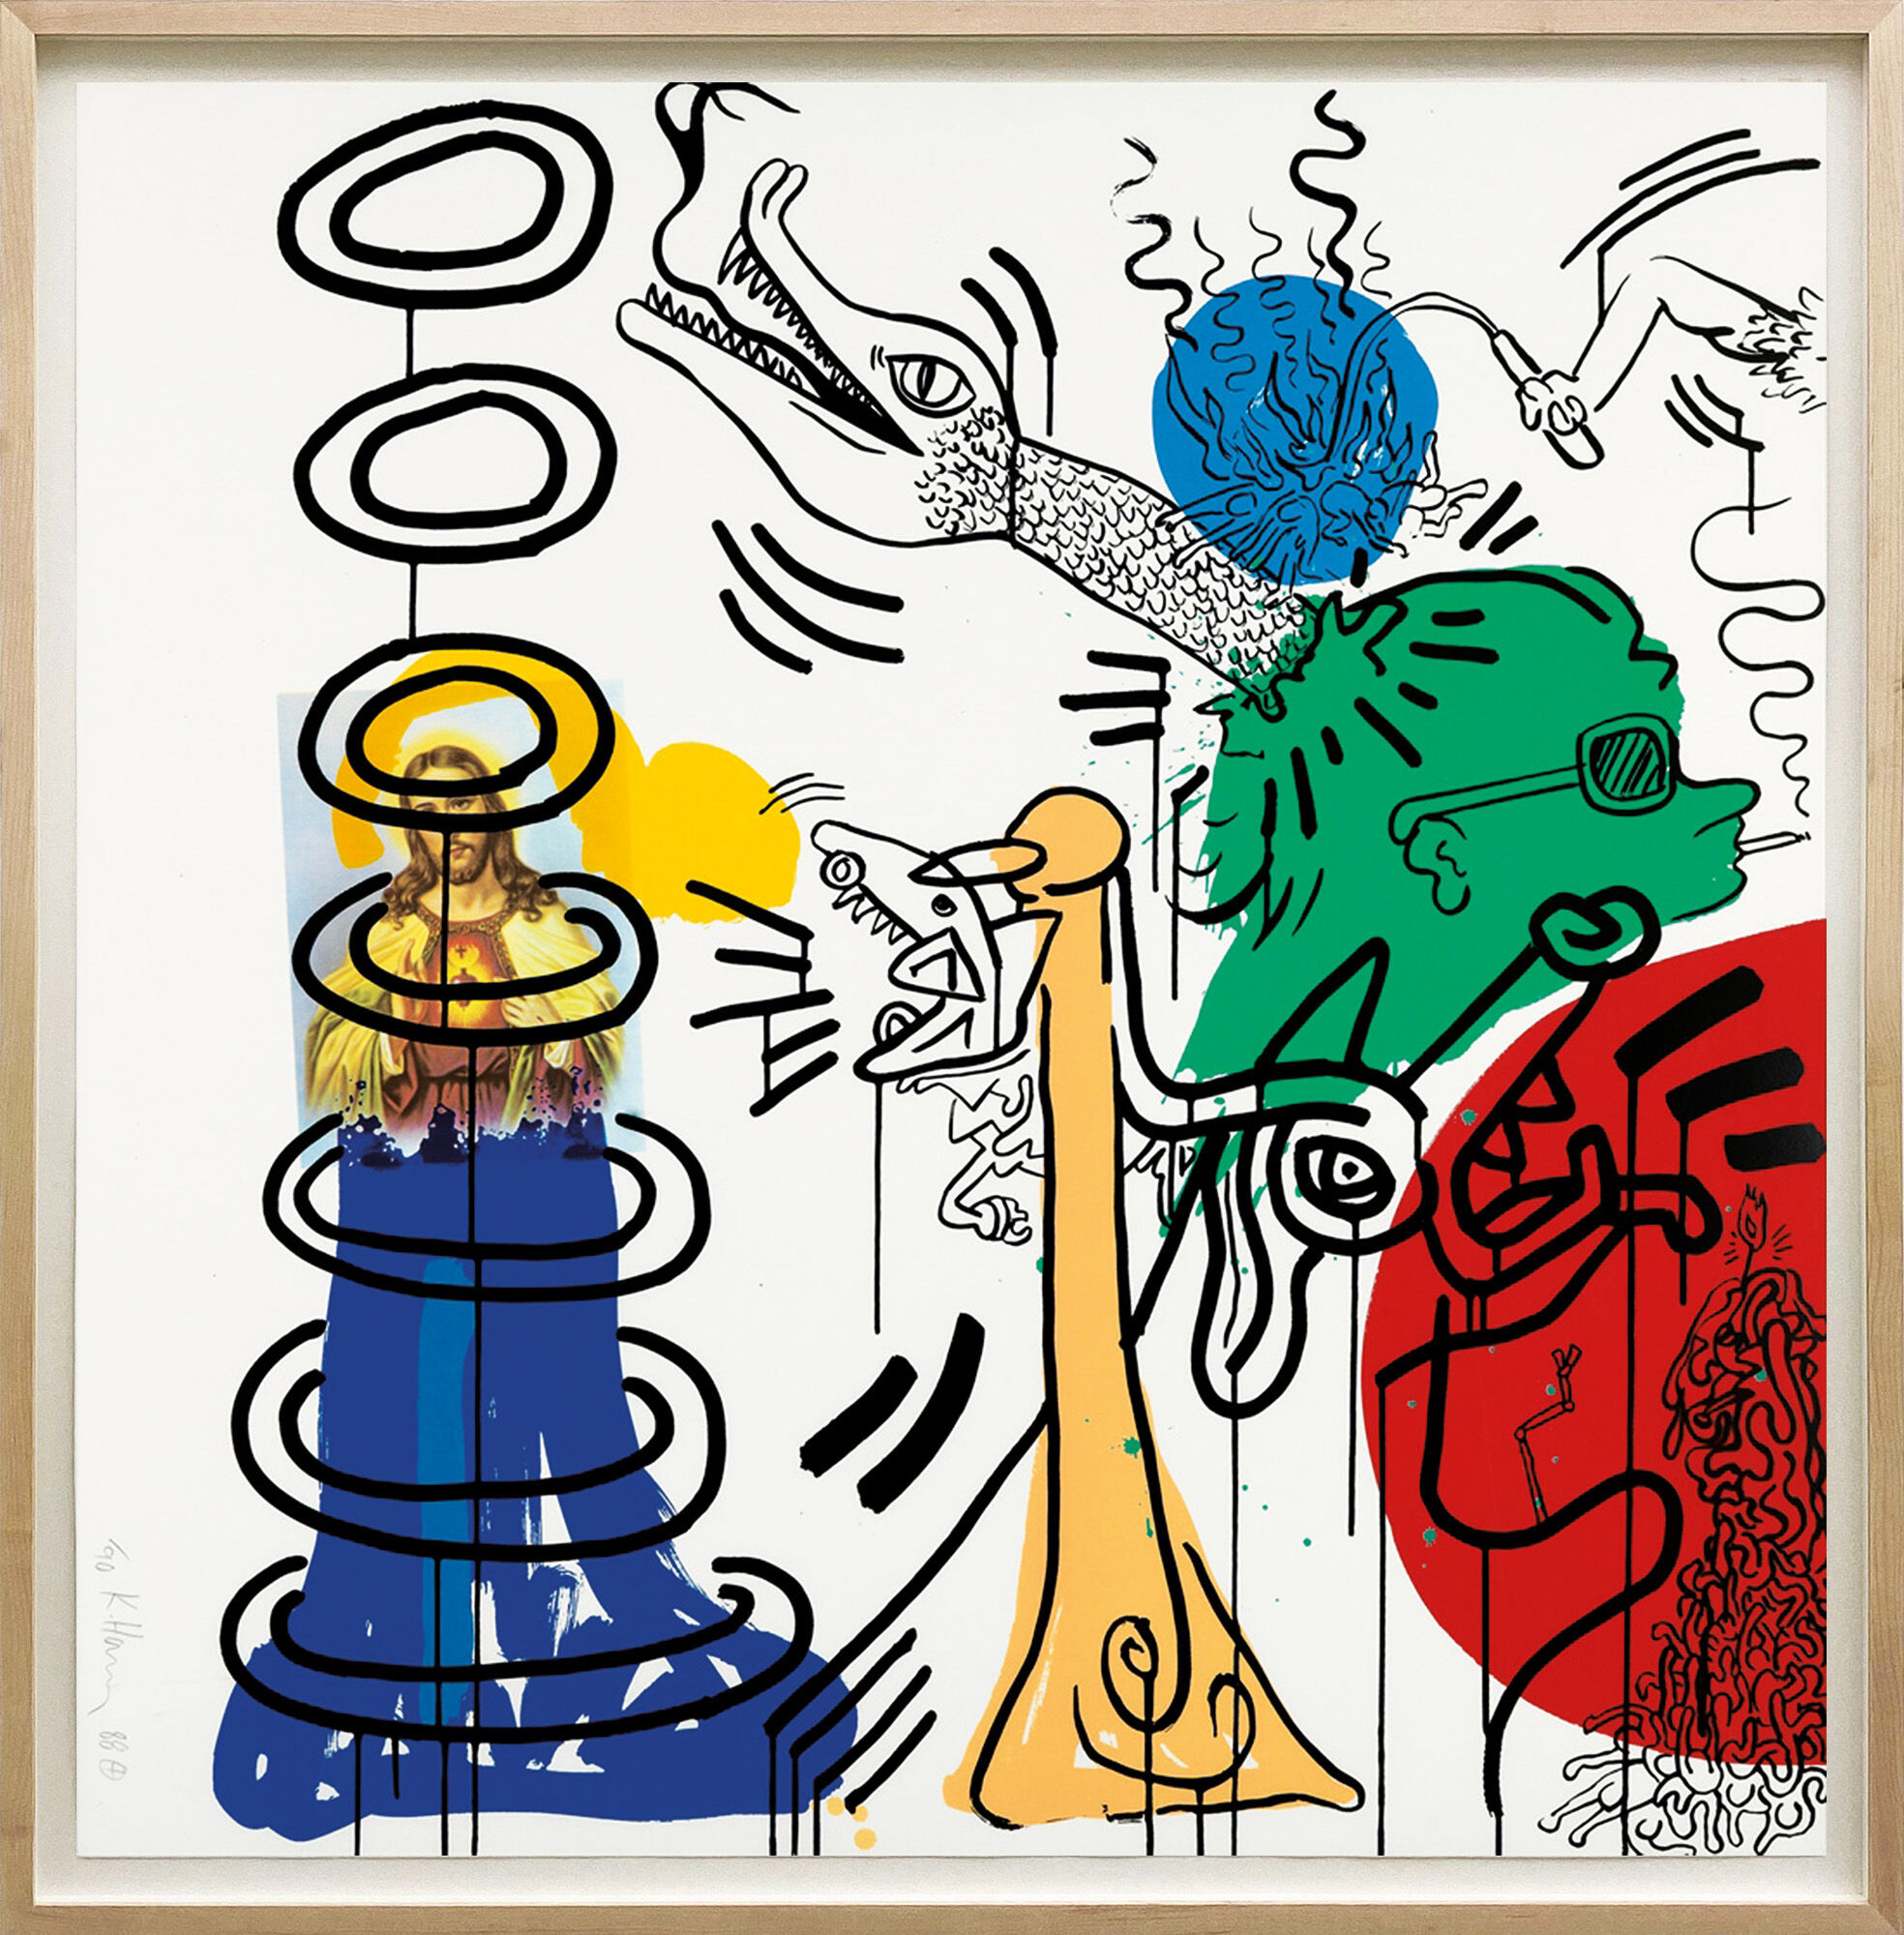 Bild "Apocalypse #5" (1988) von Keith Haring